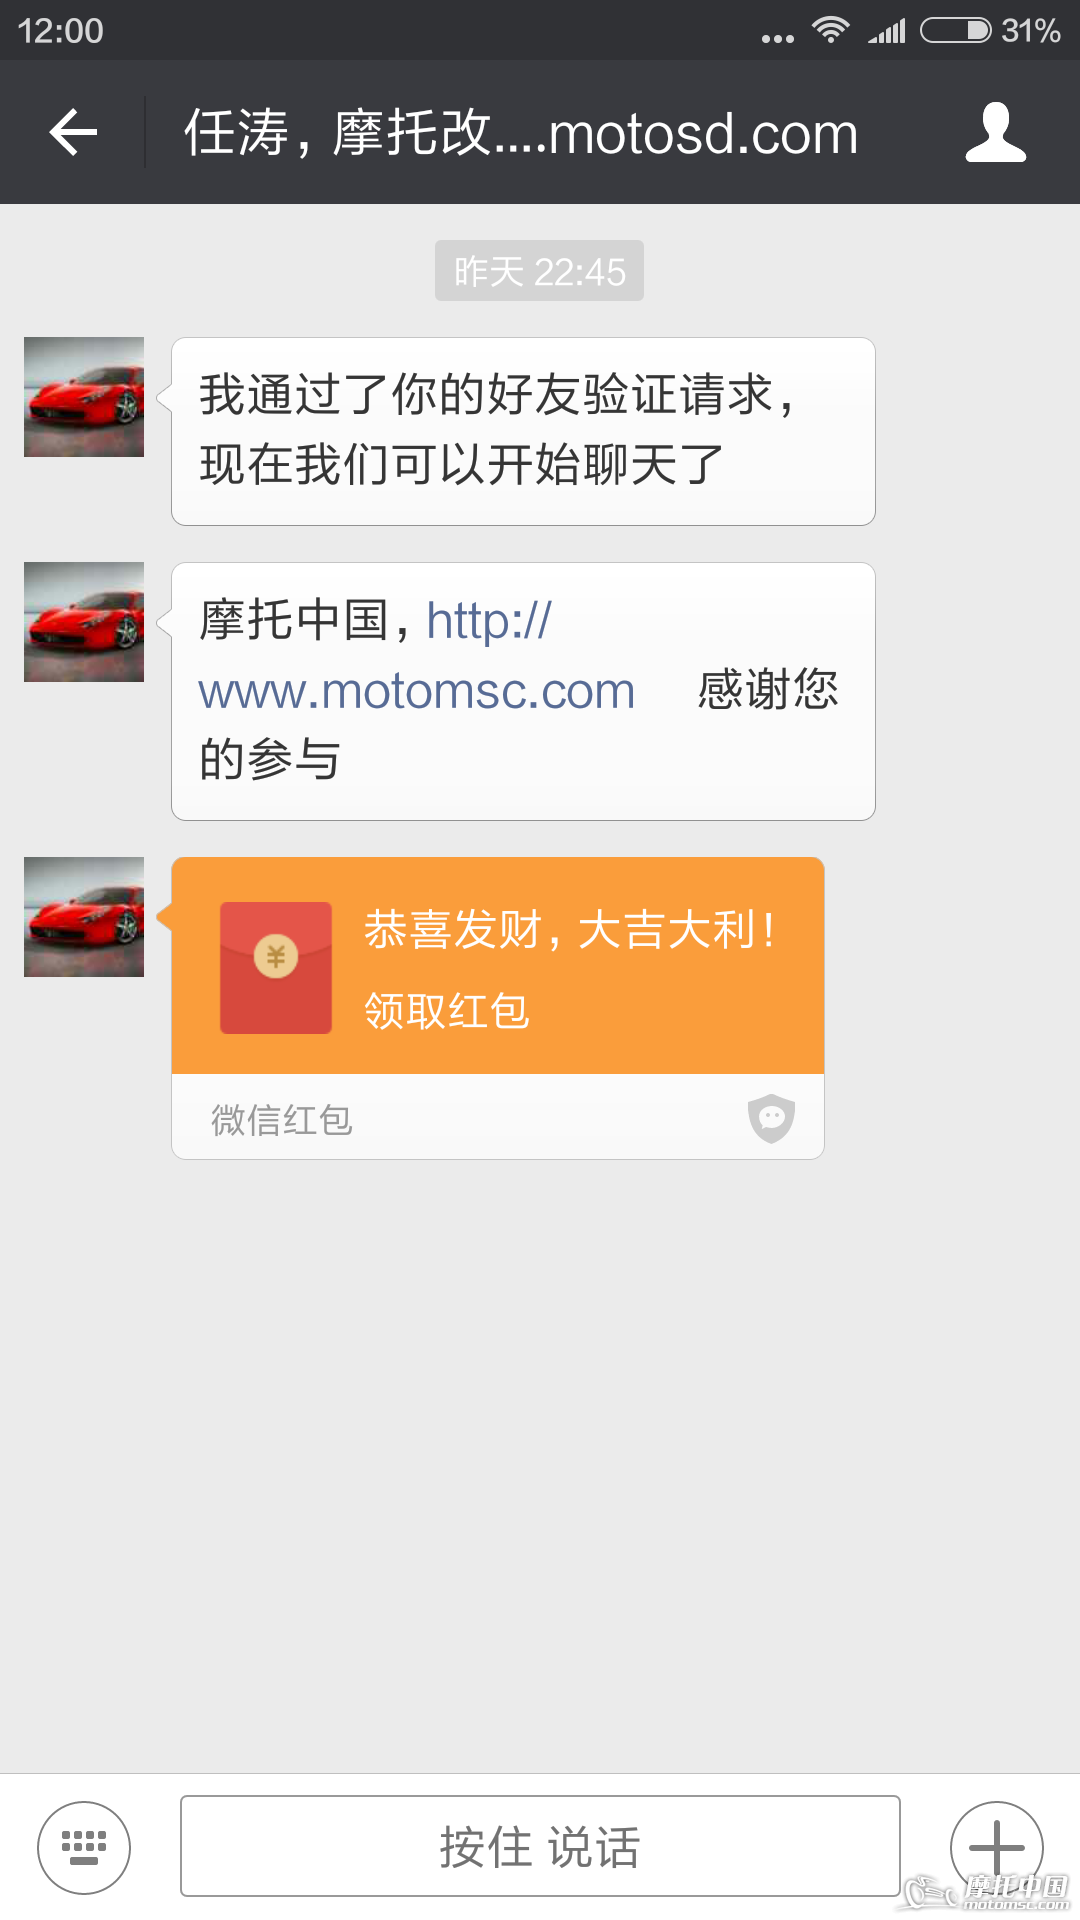 Screenshot_2016-02-25-12-00-18_com.tencent.mm.png